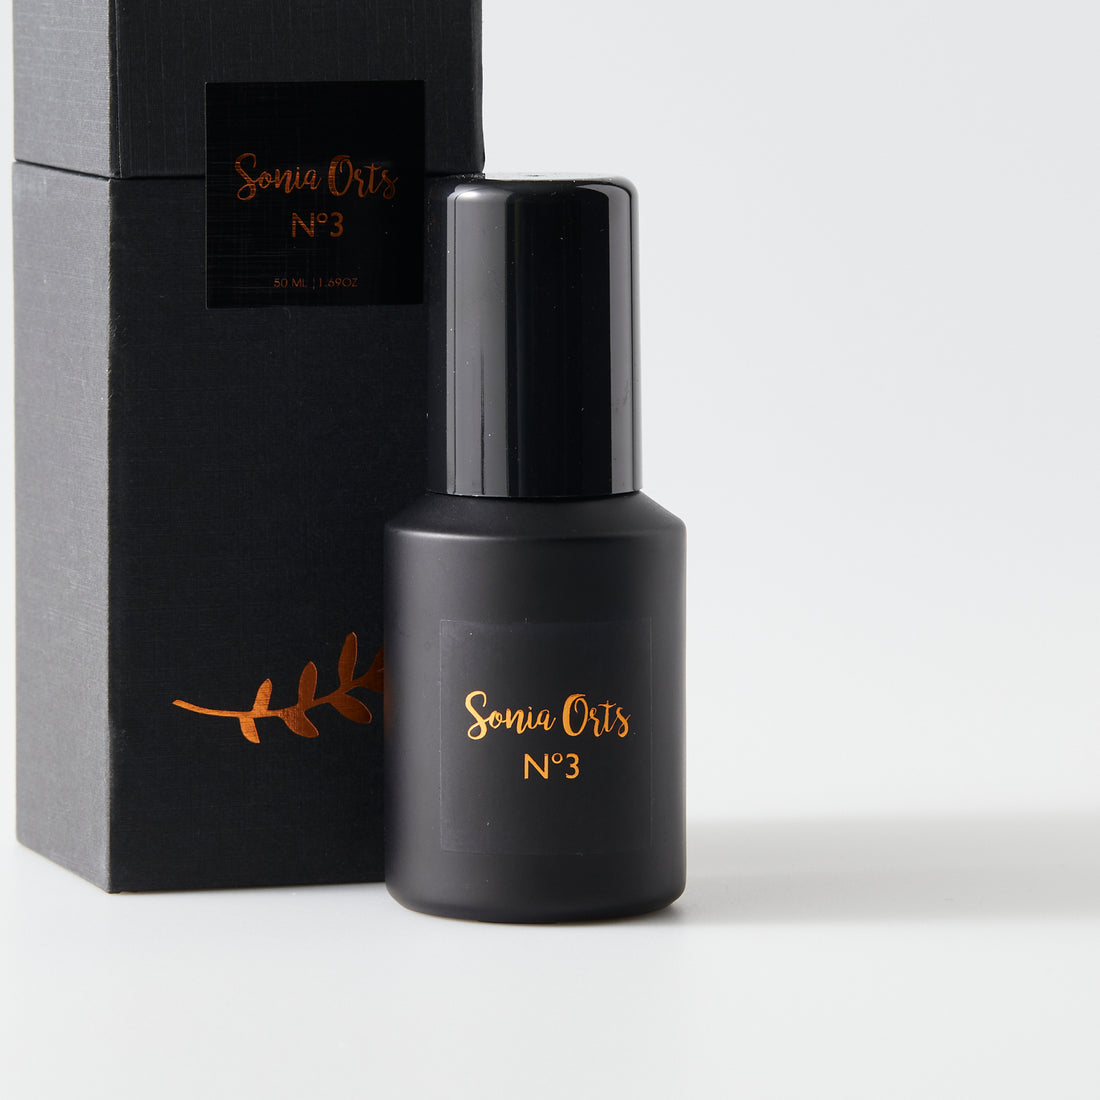 Sonia Orts No 3 natural perfume